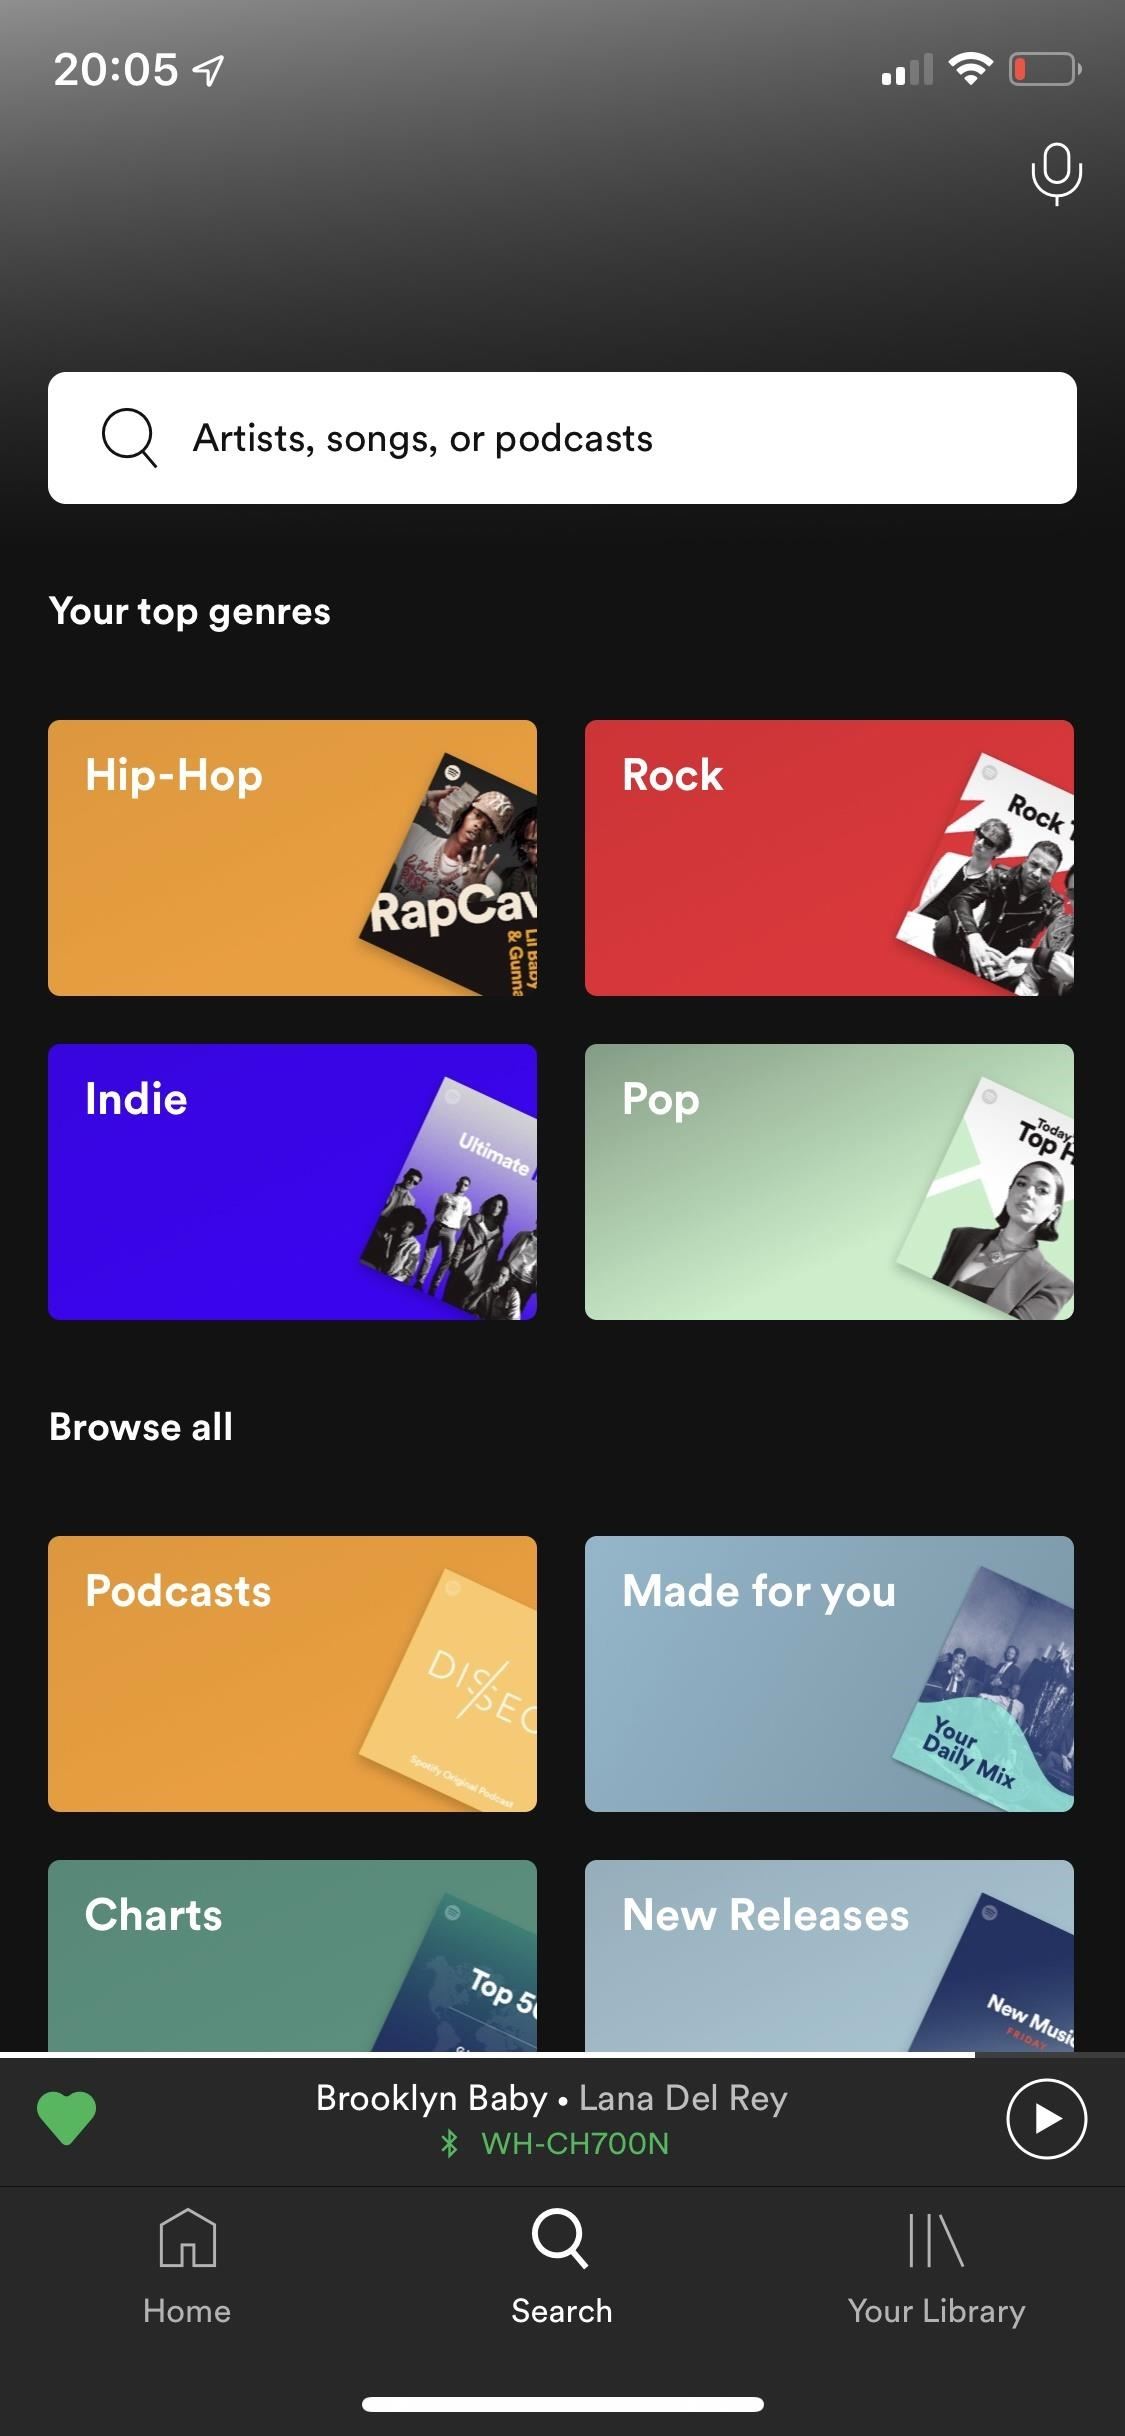 Meilleurs services de diffusion musicale: Spotify contre Apple contre Pandora contre Tidal contre Deezer contre Amazon